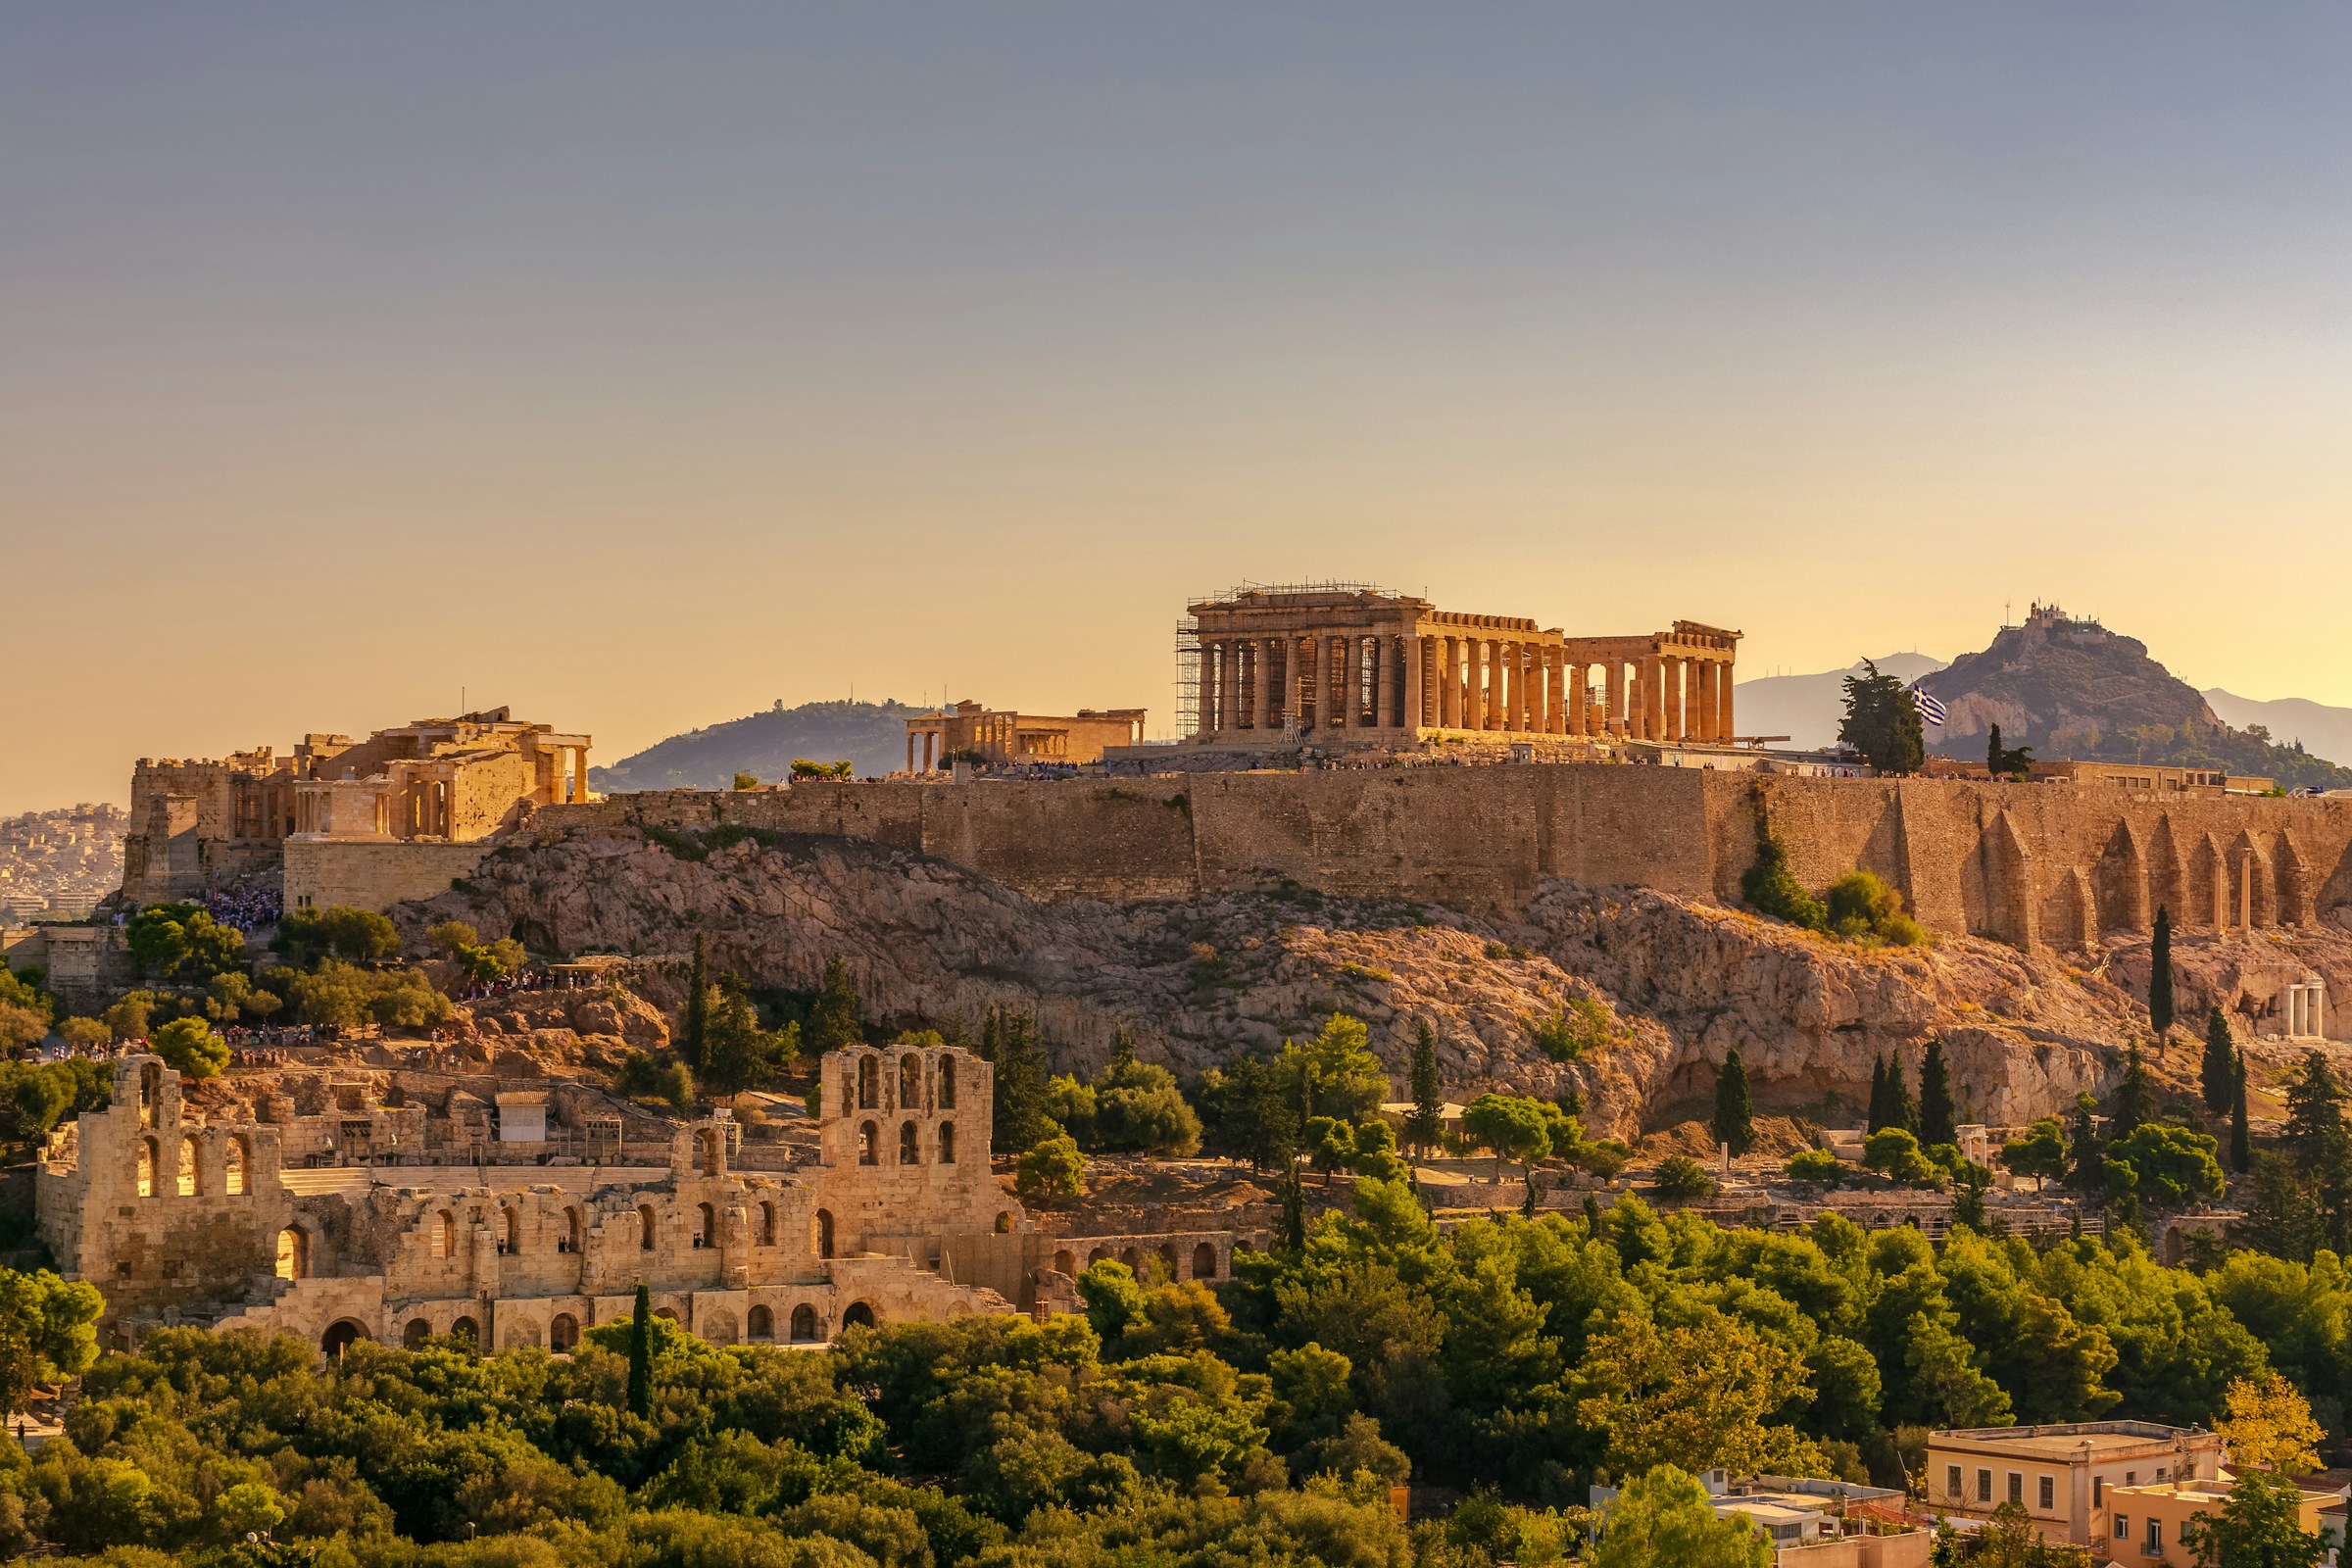 Solnedgång över Akropolis i Aten med Parthenon-templet och antikens ruiner, Grekland.